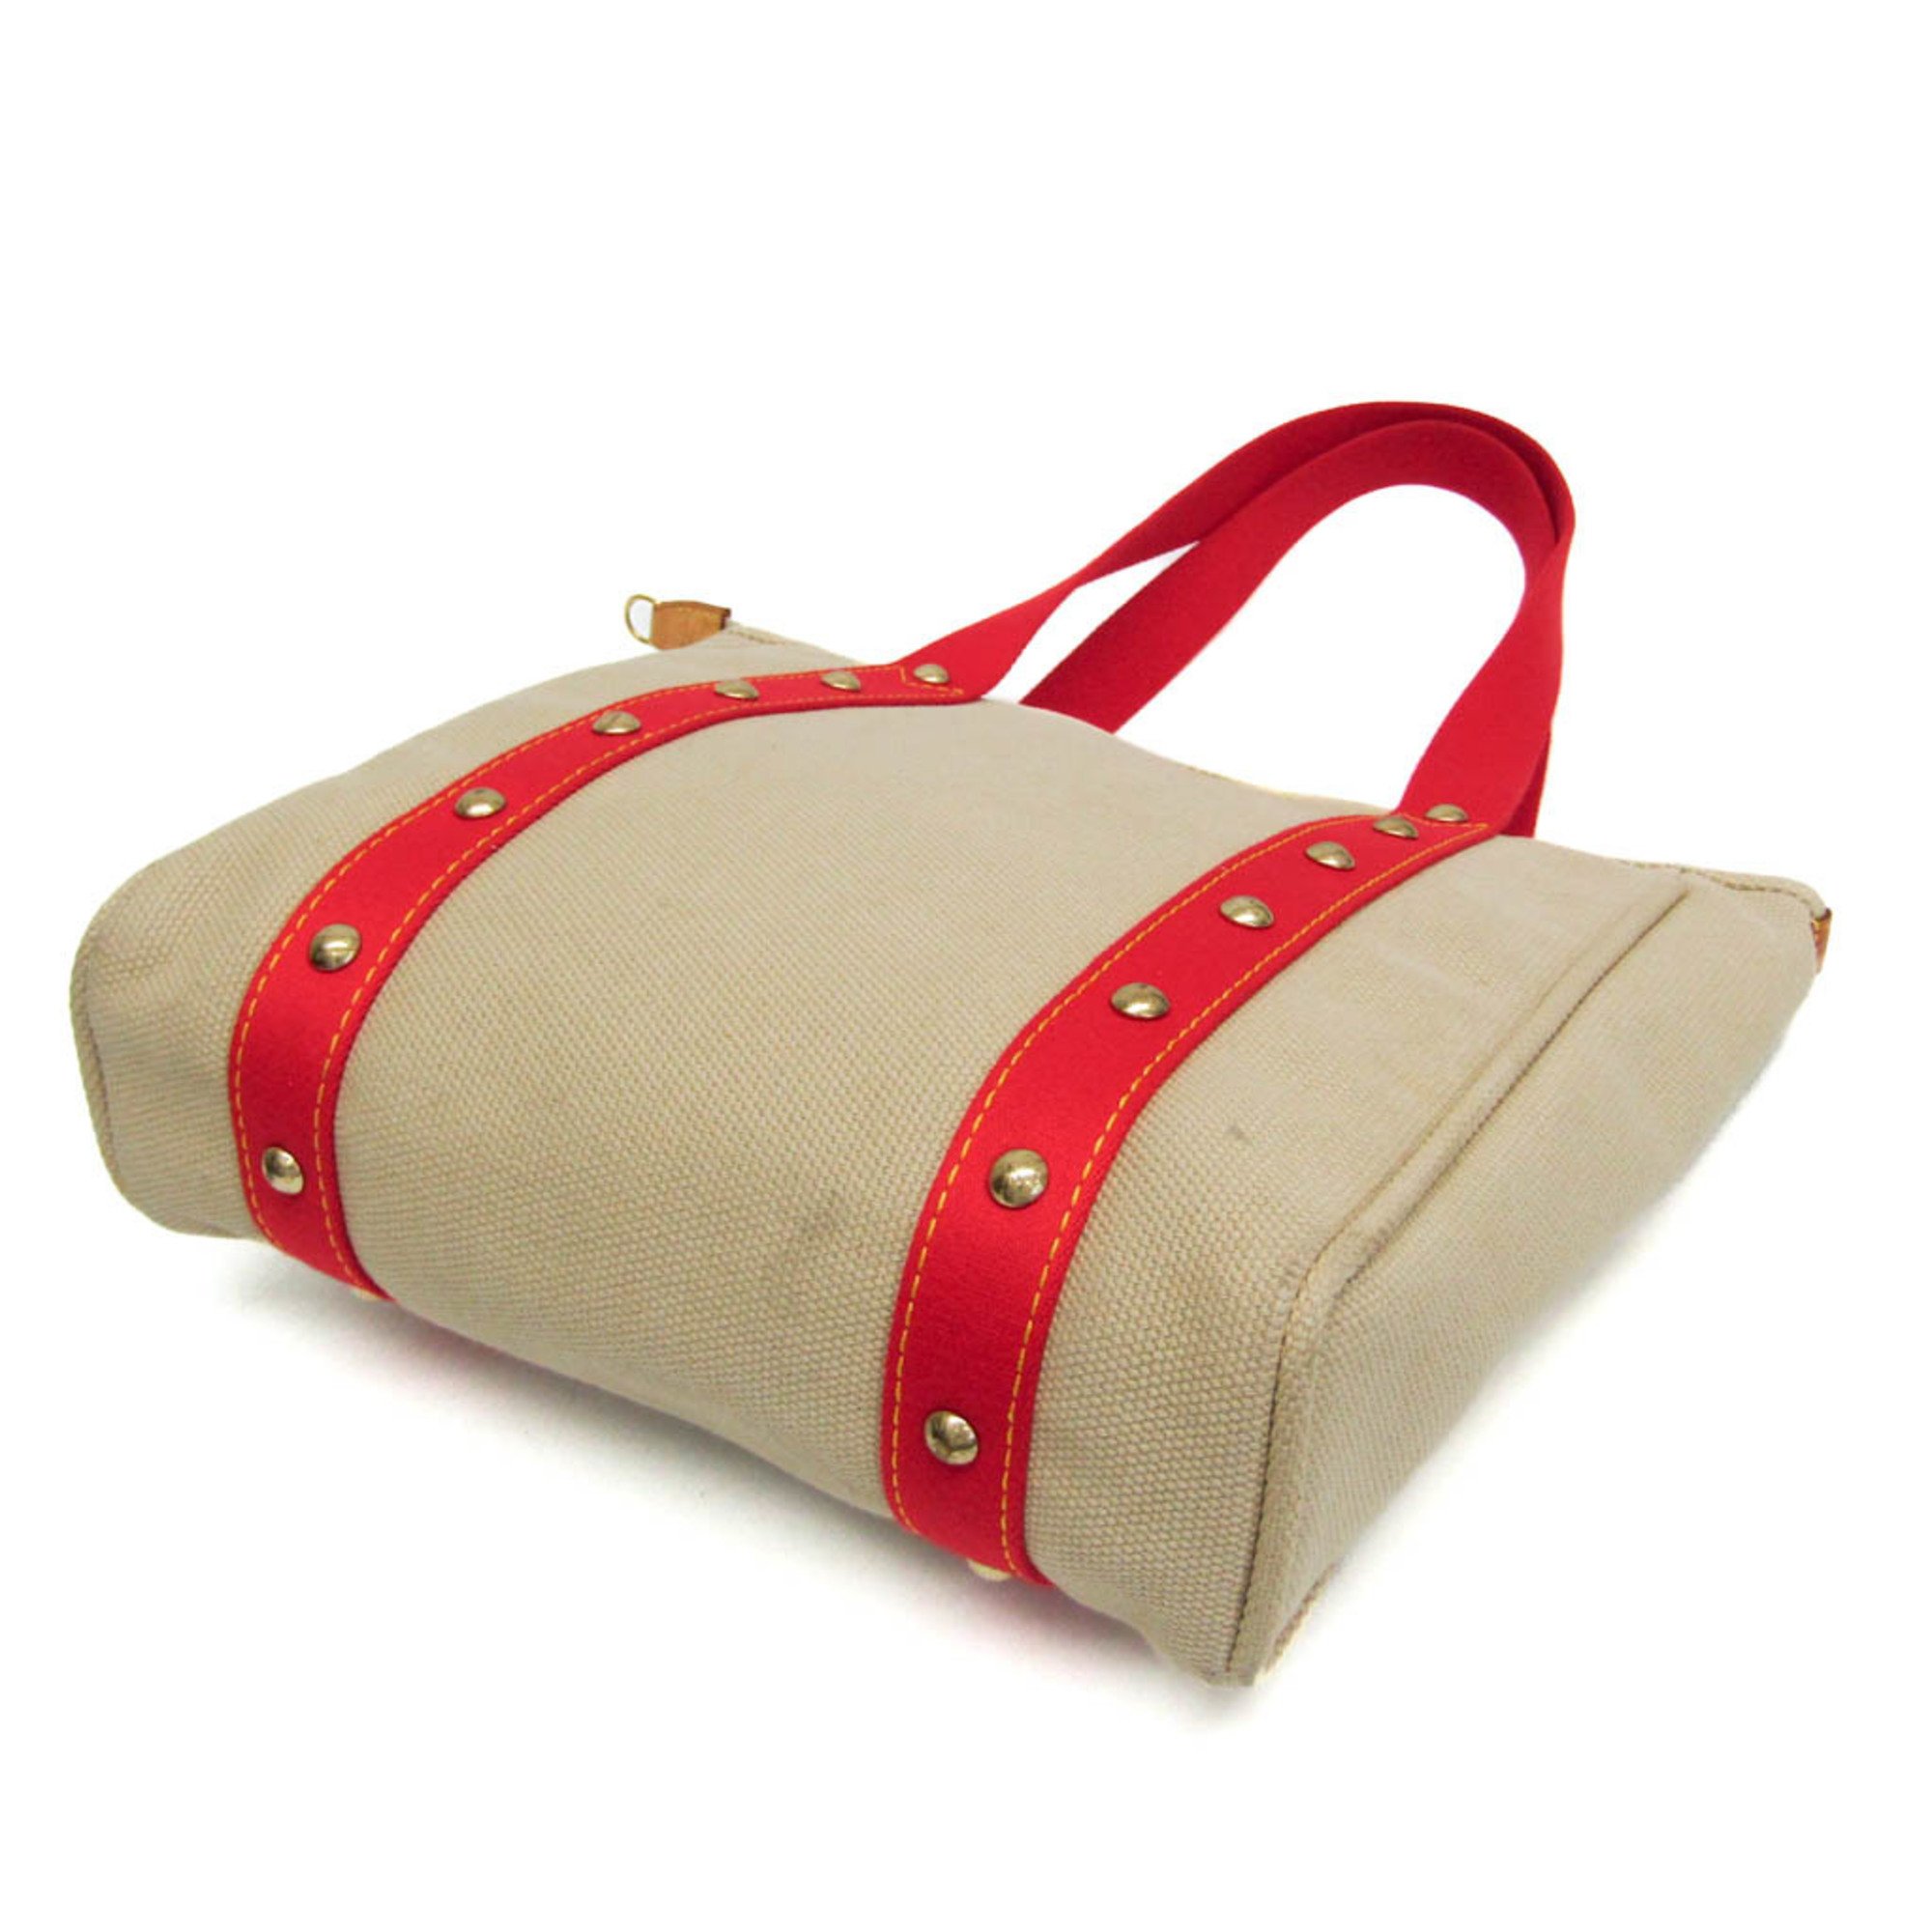 Louis Vuitton Antigua Cabas MM M40035 Women's Tote Bag Beige,Red Color